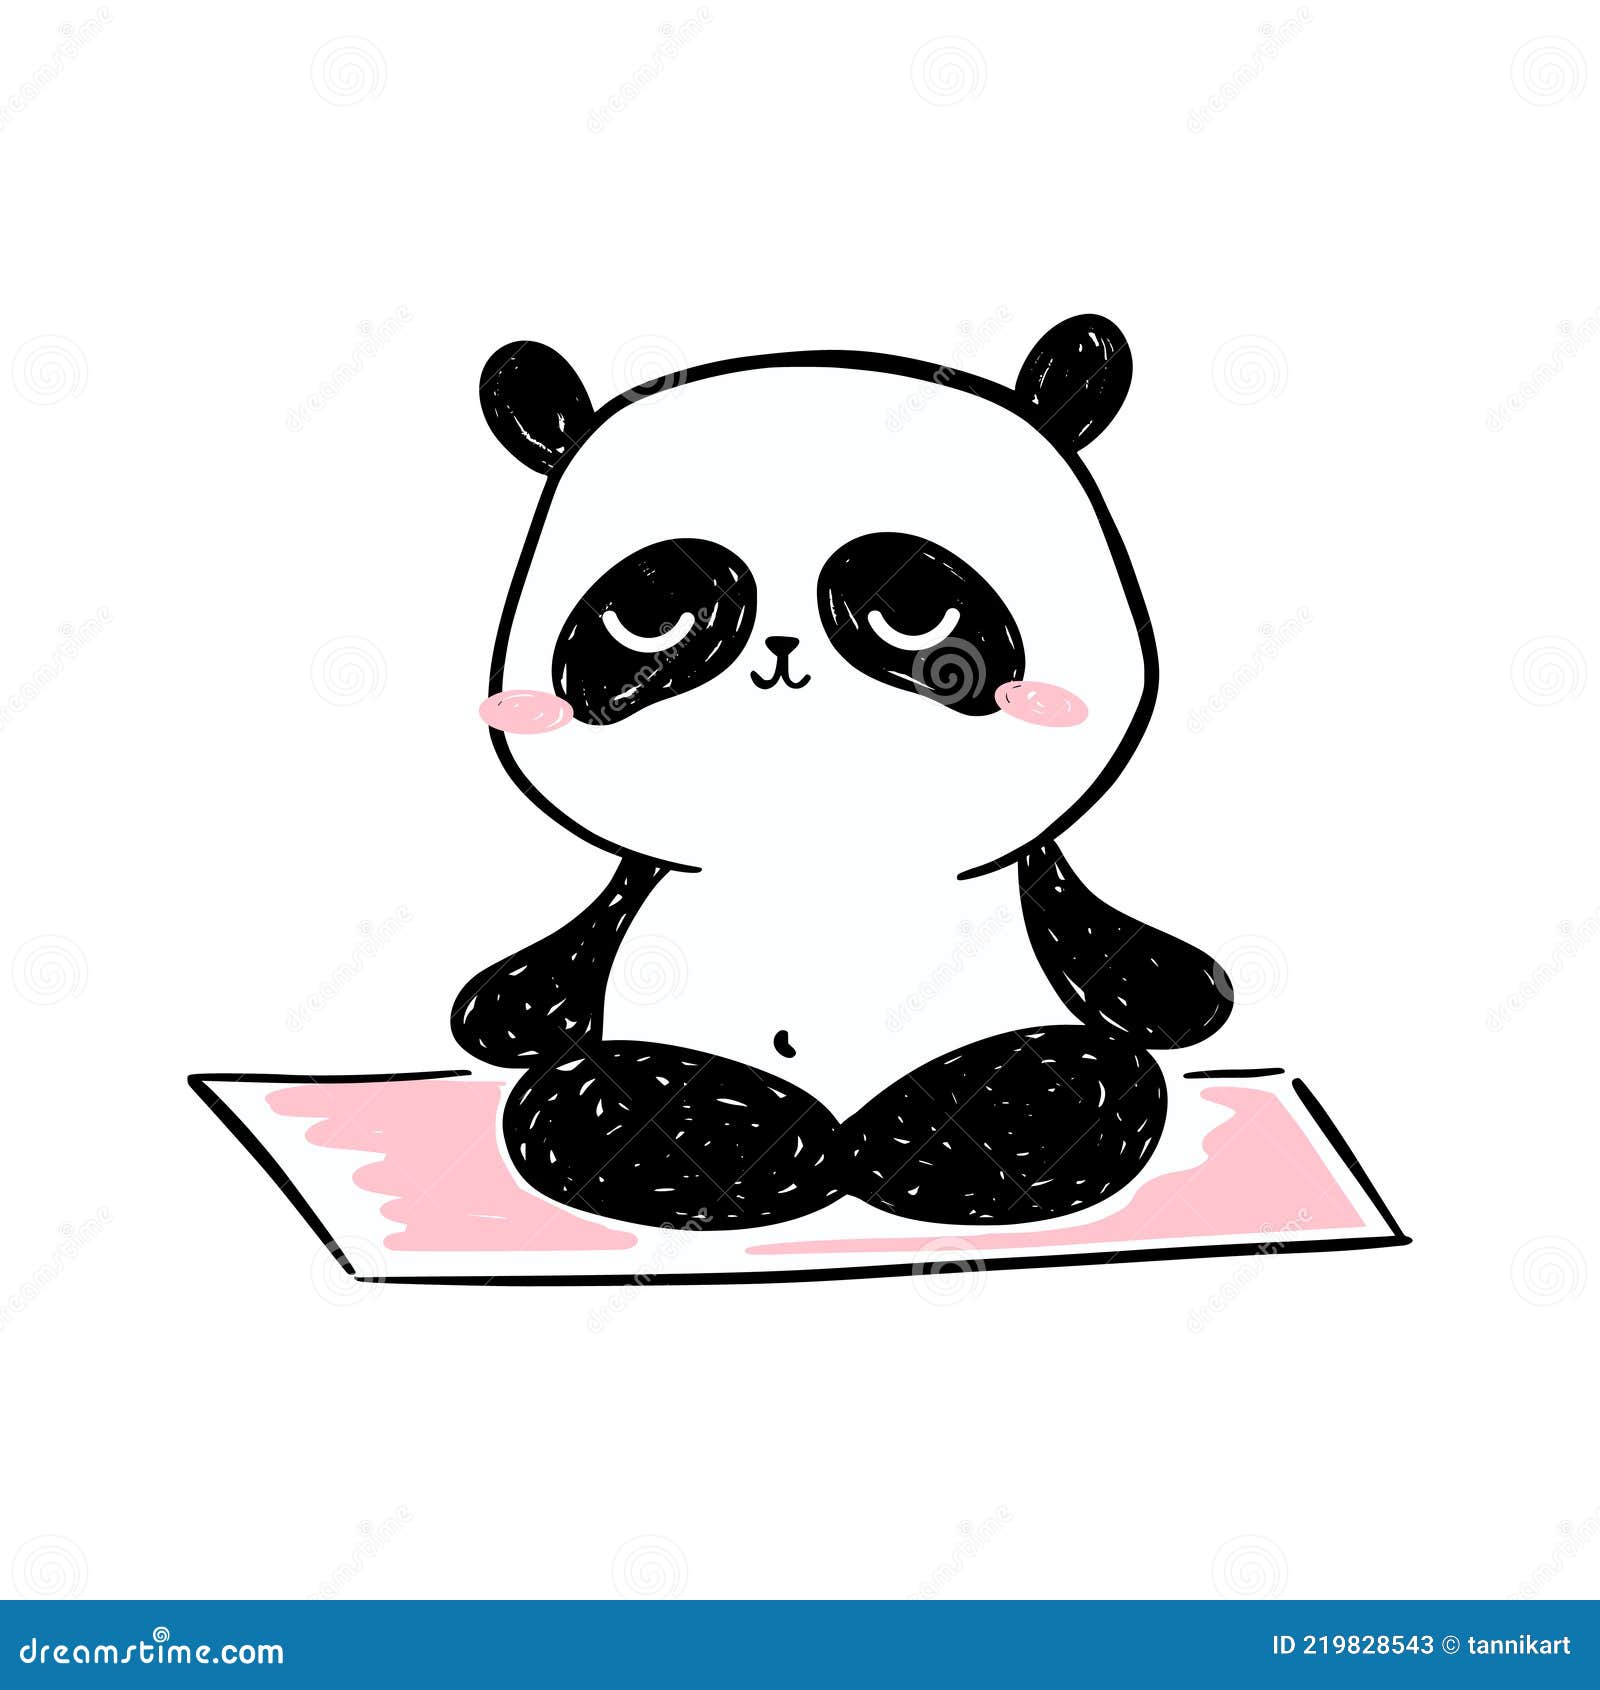 Drawing Panda Images  Free Download on Freepik